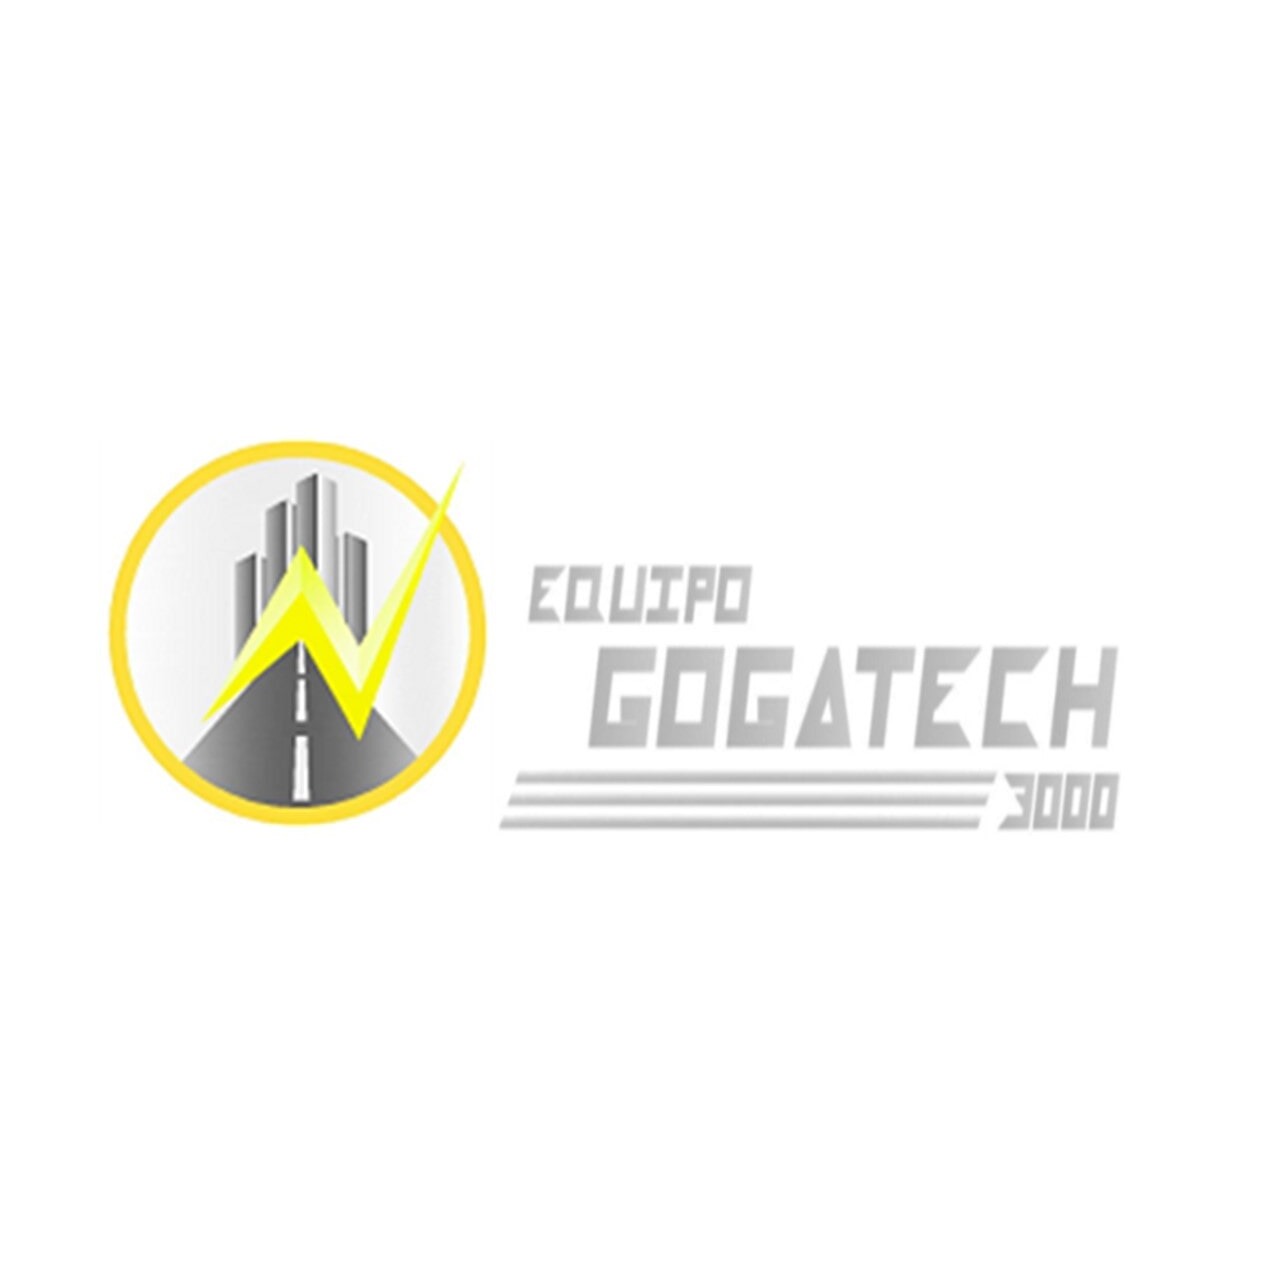 Electroconstructora Gogatech 3000 Cuernavaca